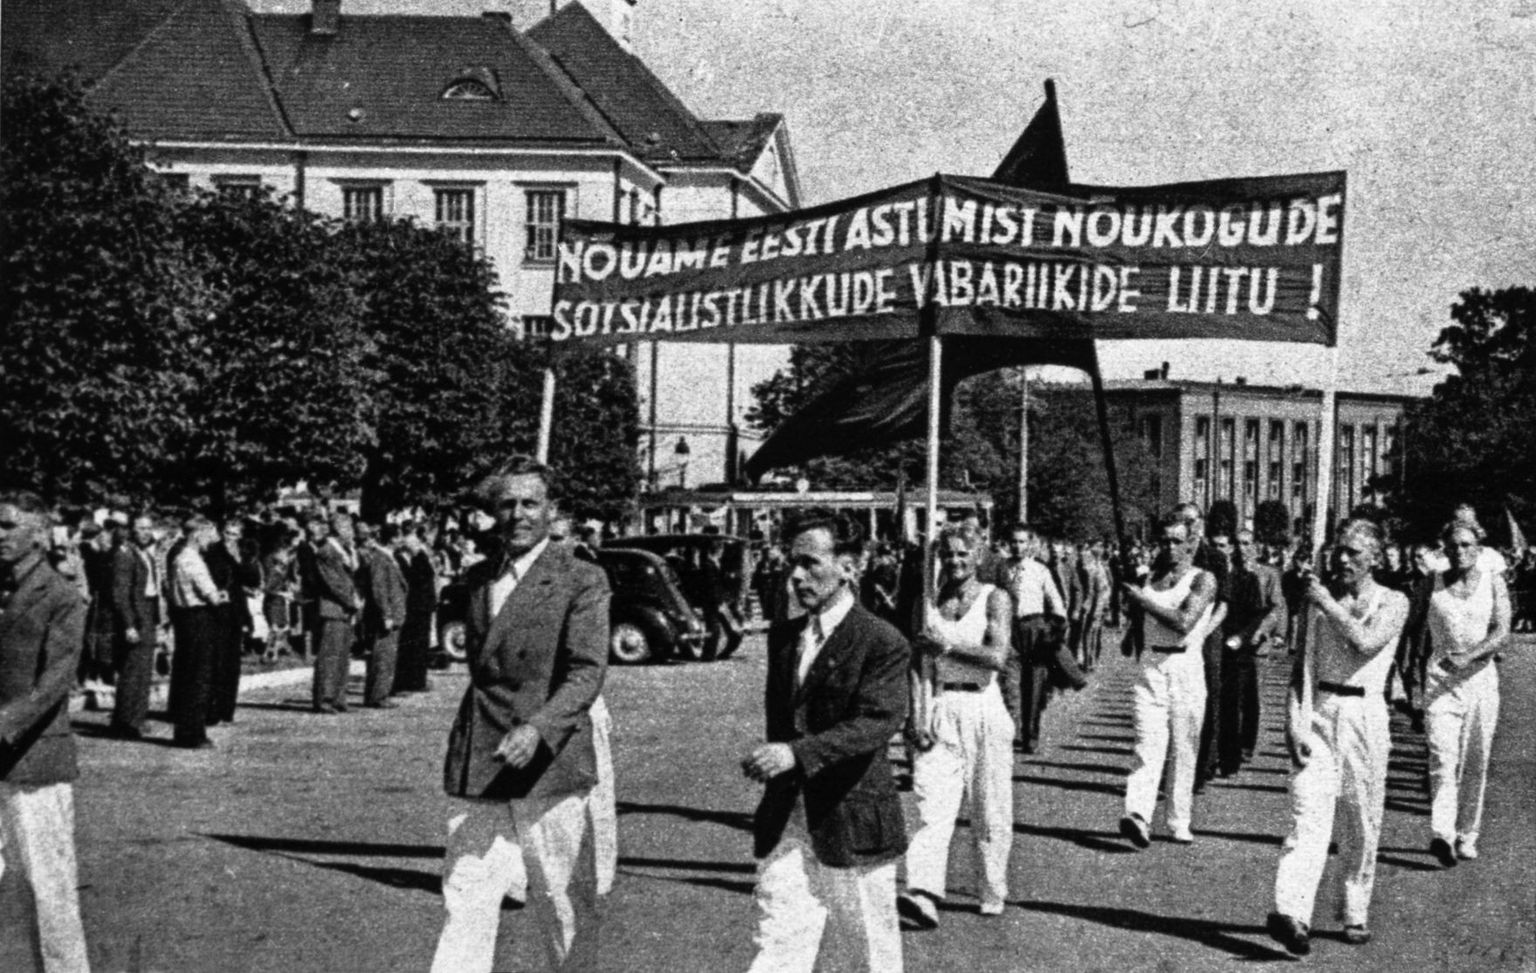 Tallinna töölissportlased miitingul Võidu väljakul 17. juulil 1940. aastal.